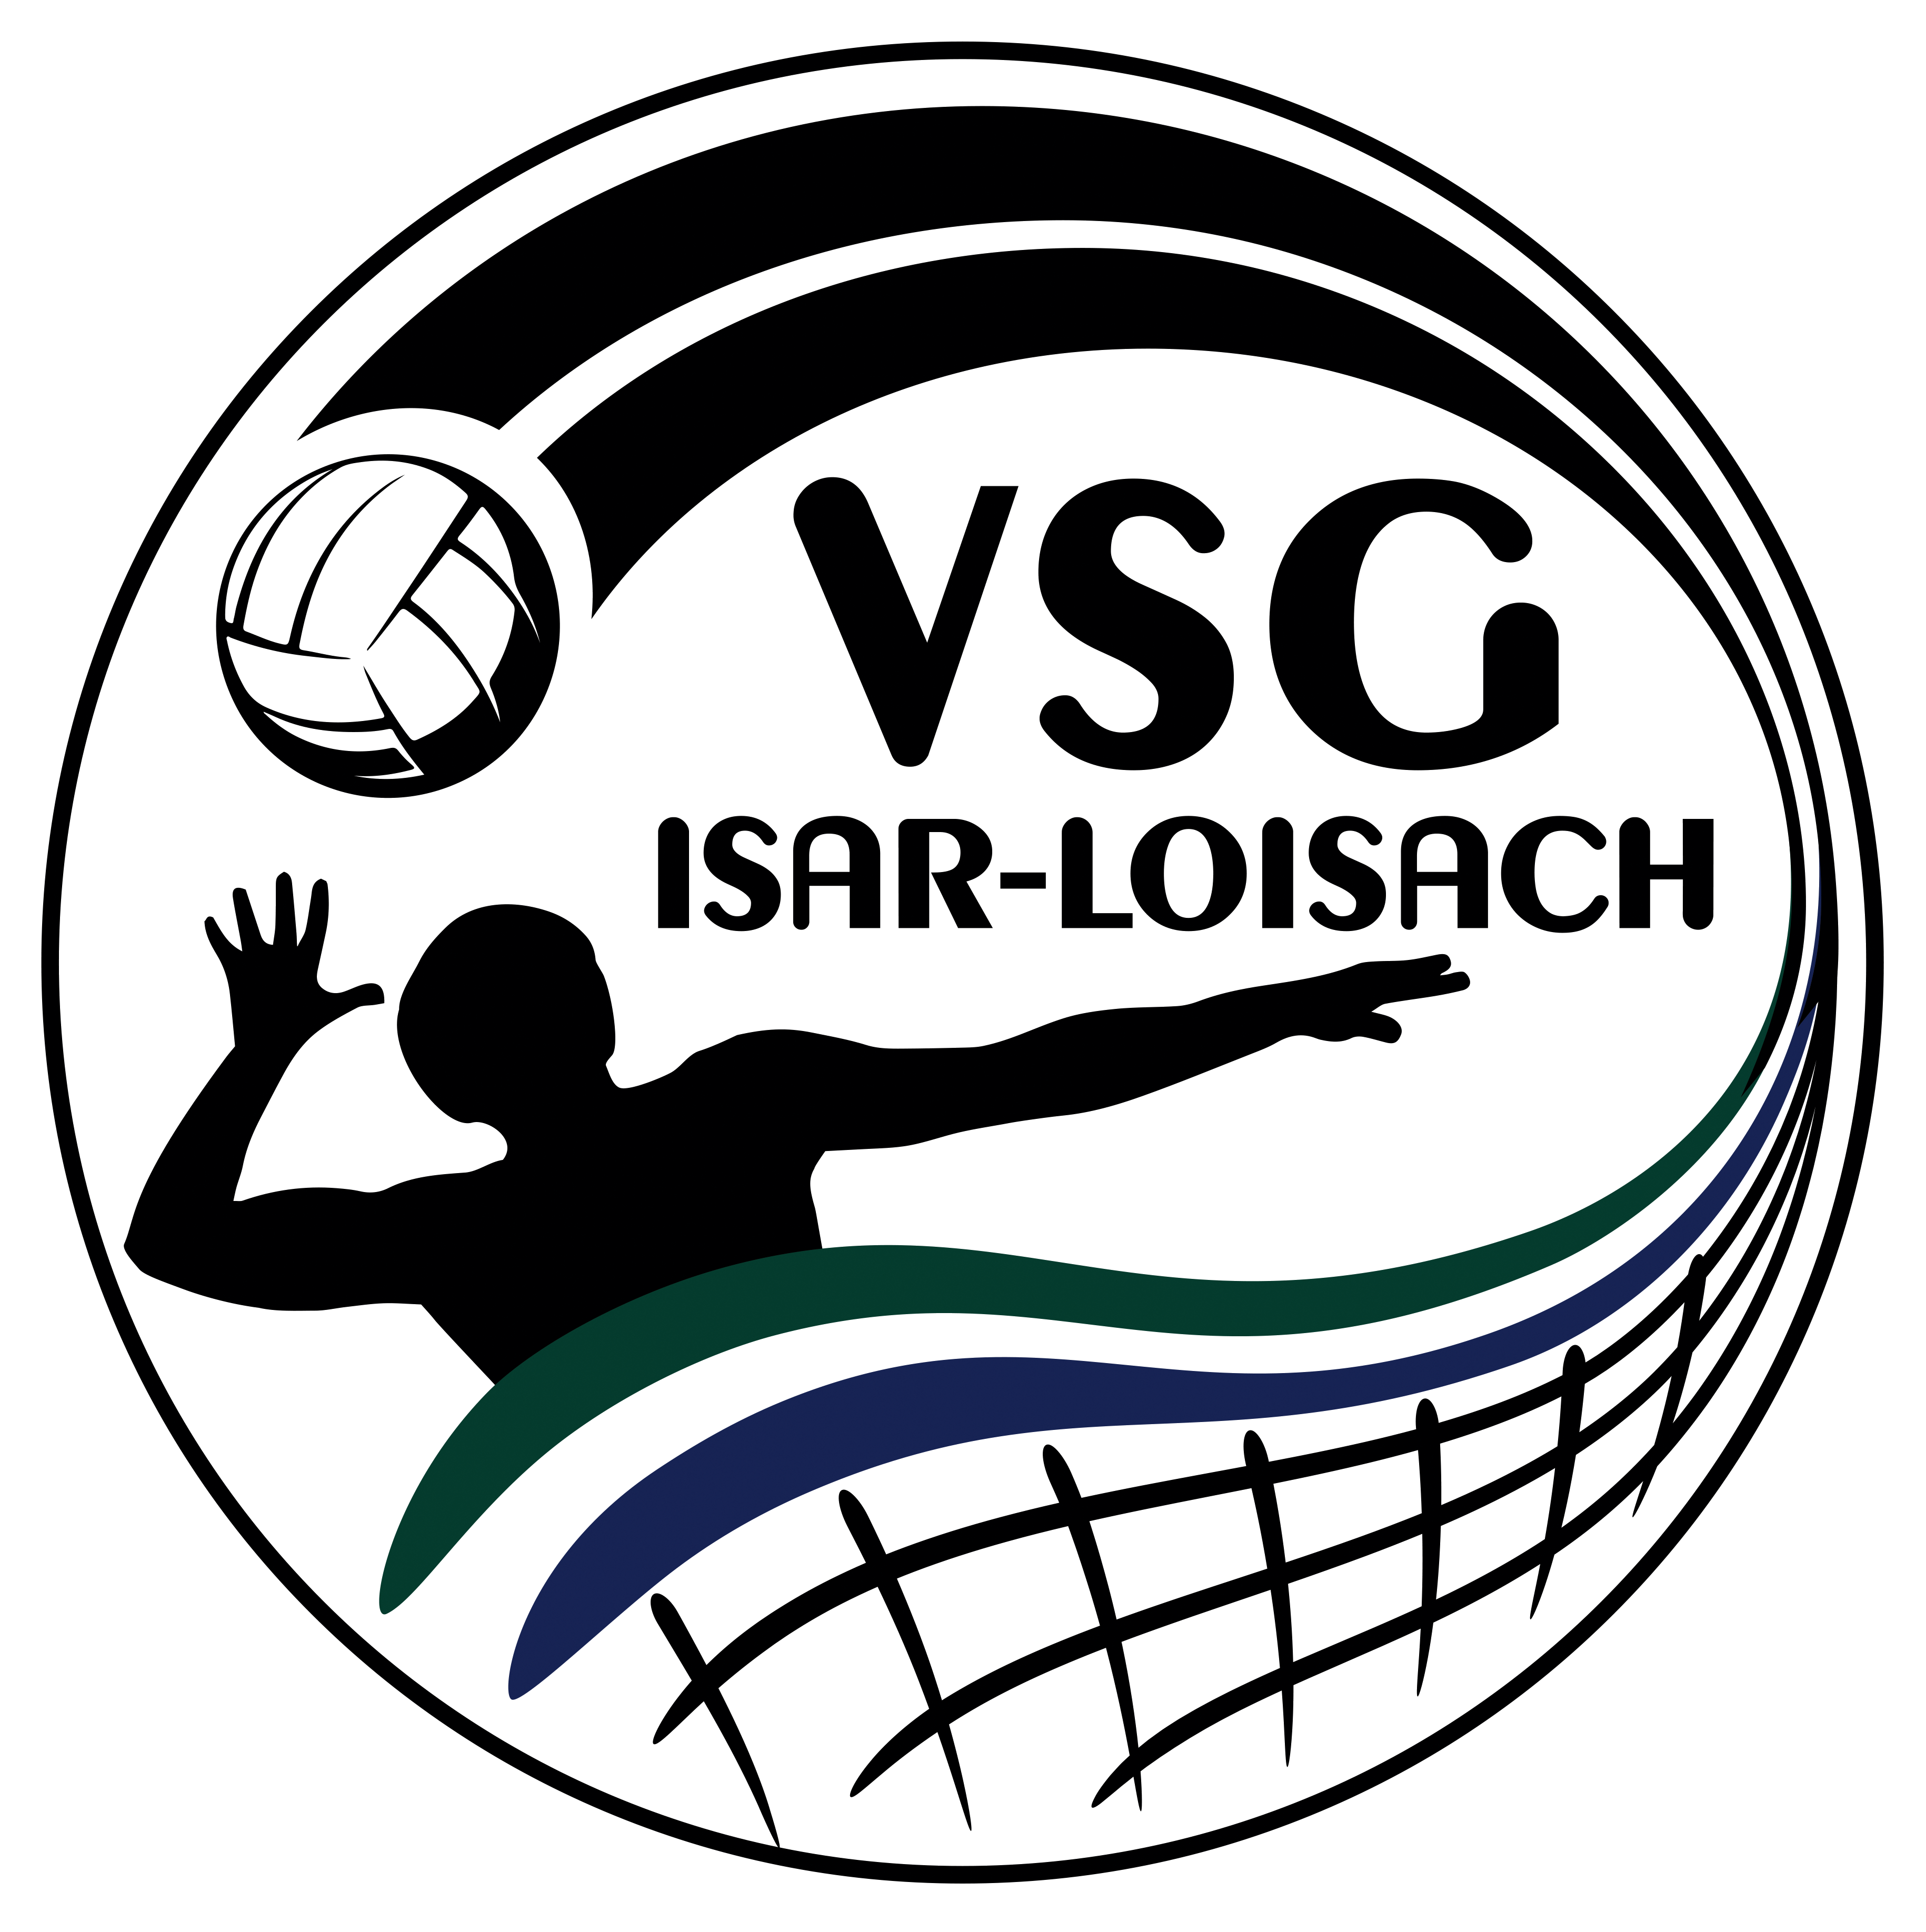 VSG Isar-Loisach